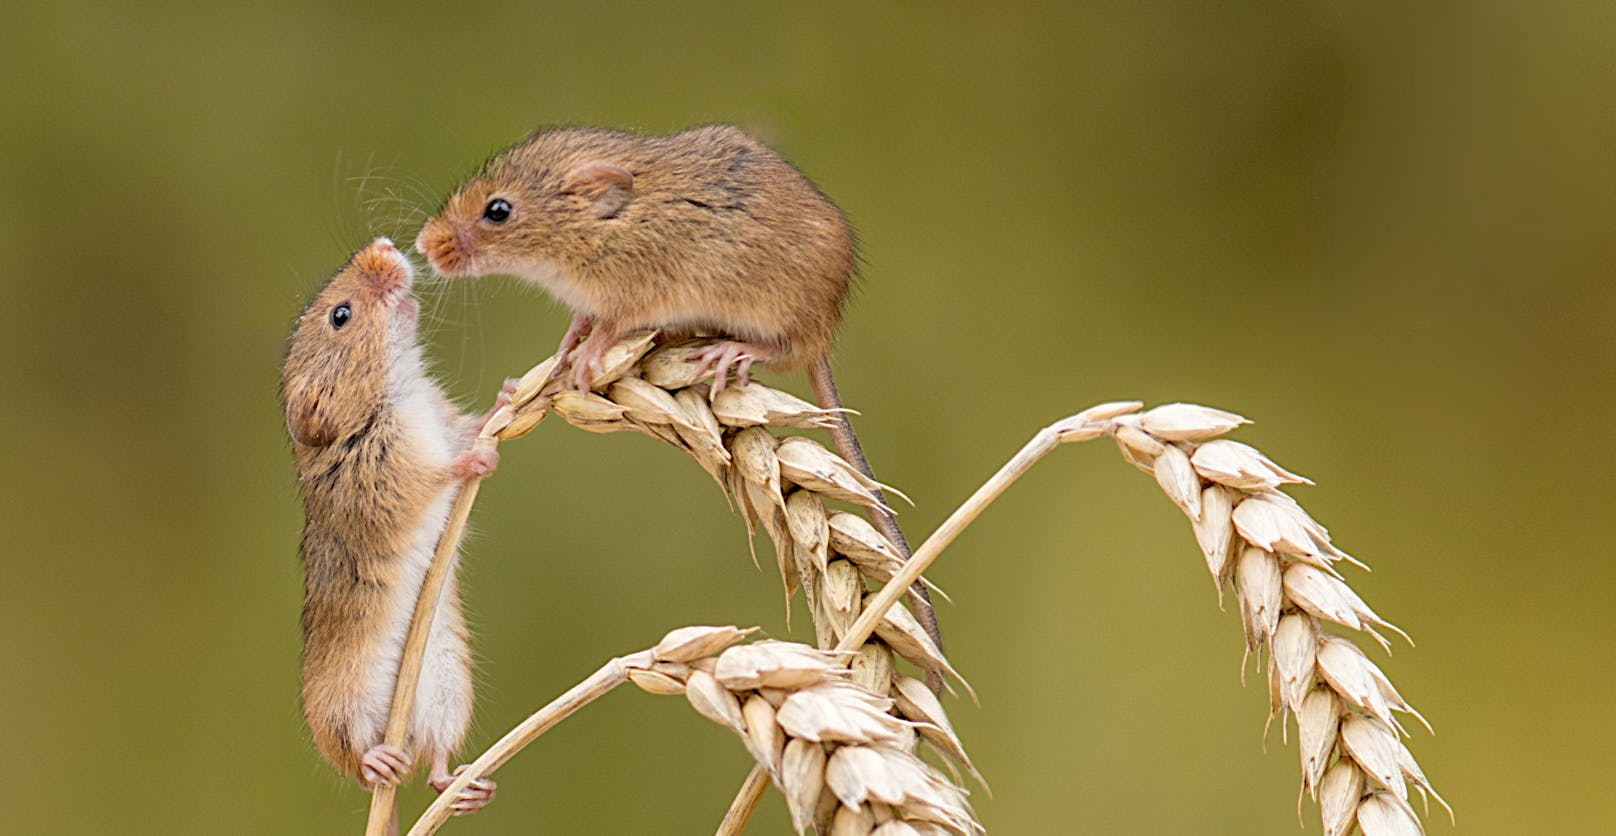 Diese zwei Mäuschen trafen sich wohl auf ein Date im Weizenfeld. 